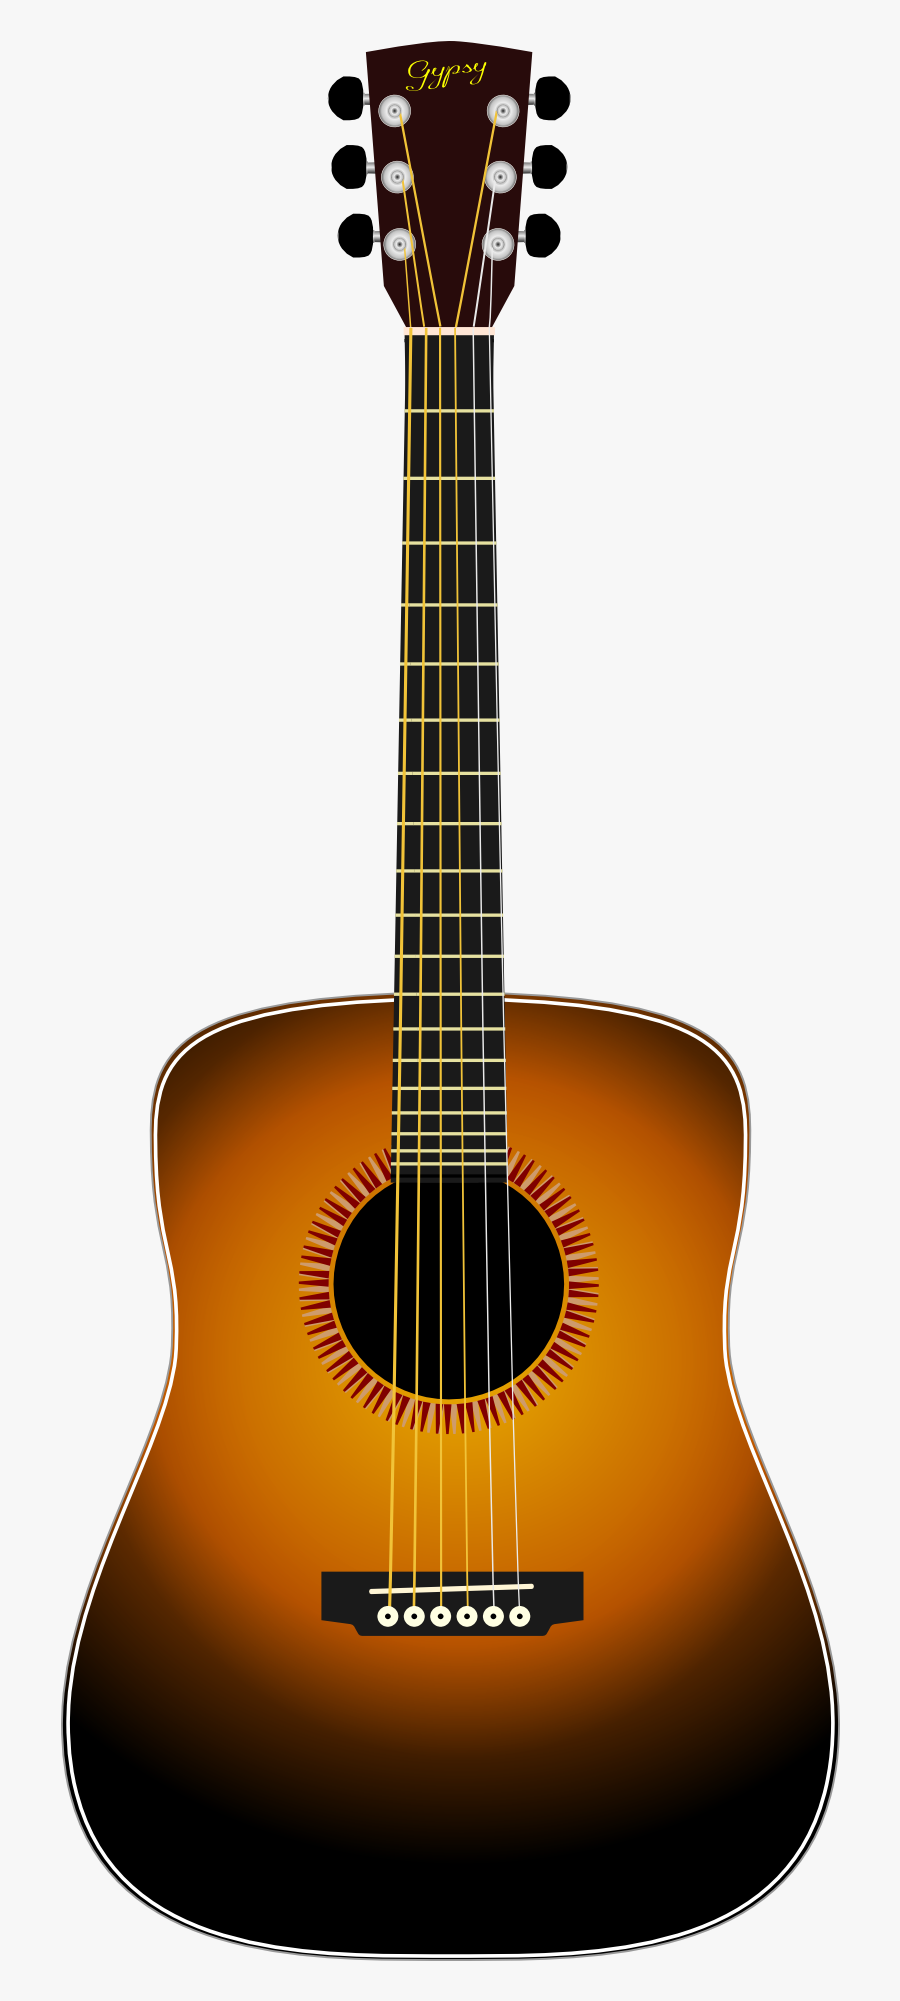 Transparent Guitar Drawing Png - Cây Đàn Ghi Ta, Transparent Clipart